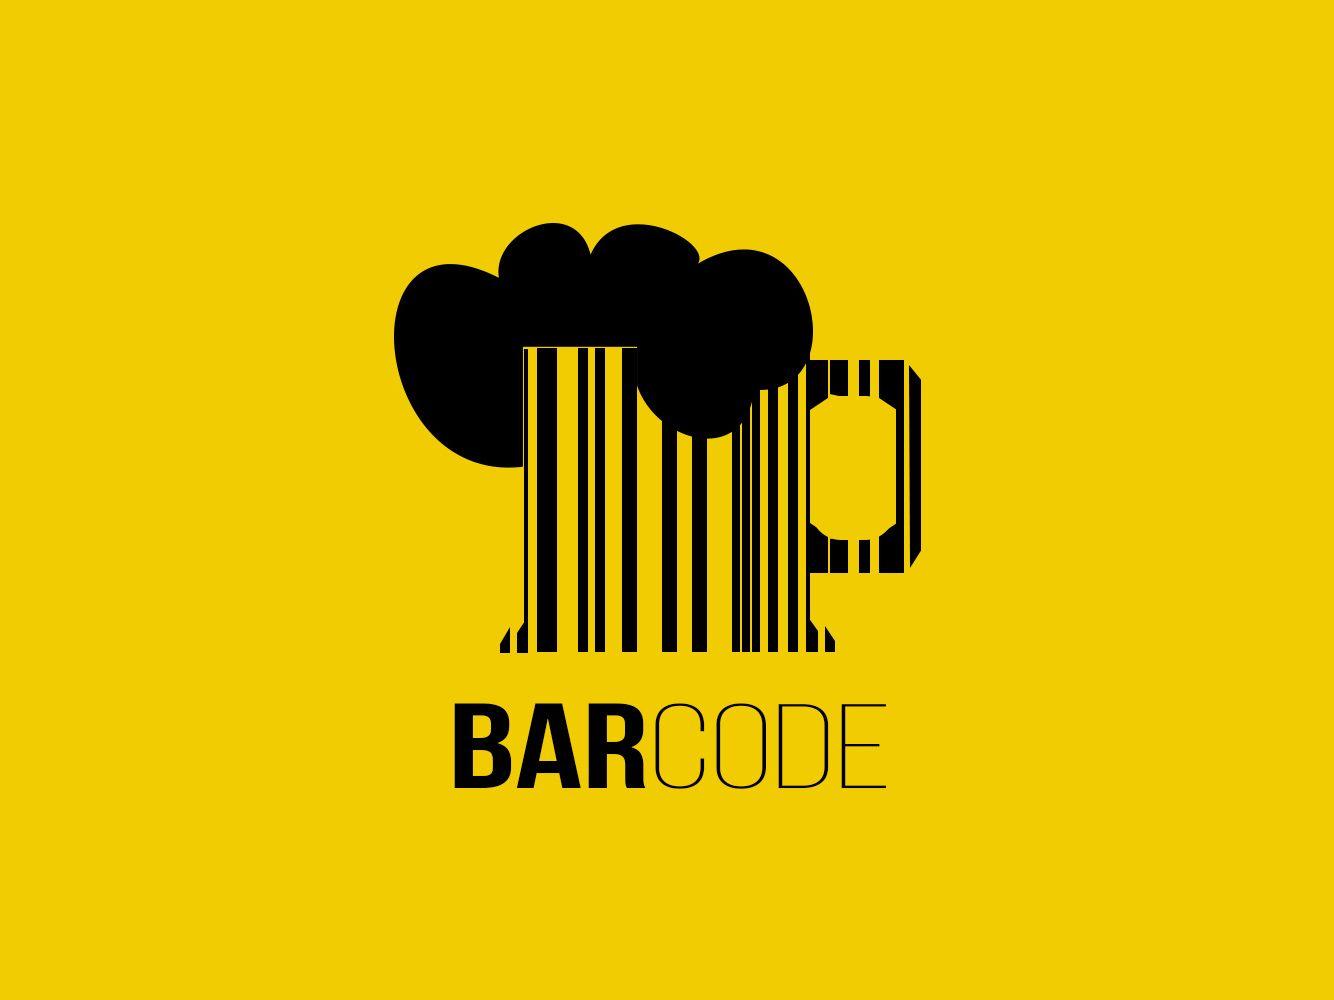 Barcode Logo - Barcode Logo by Jatin Chugh on Dribbble